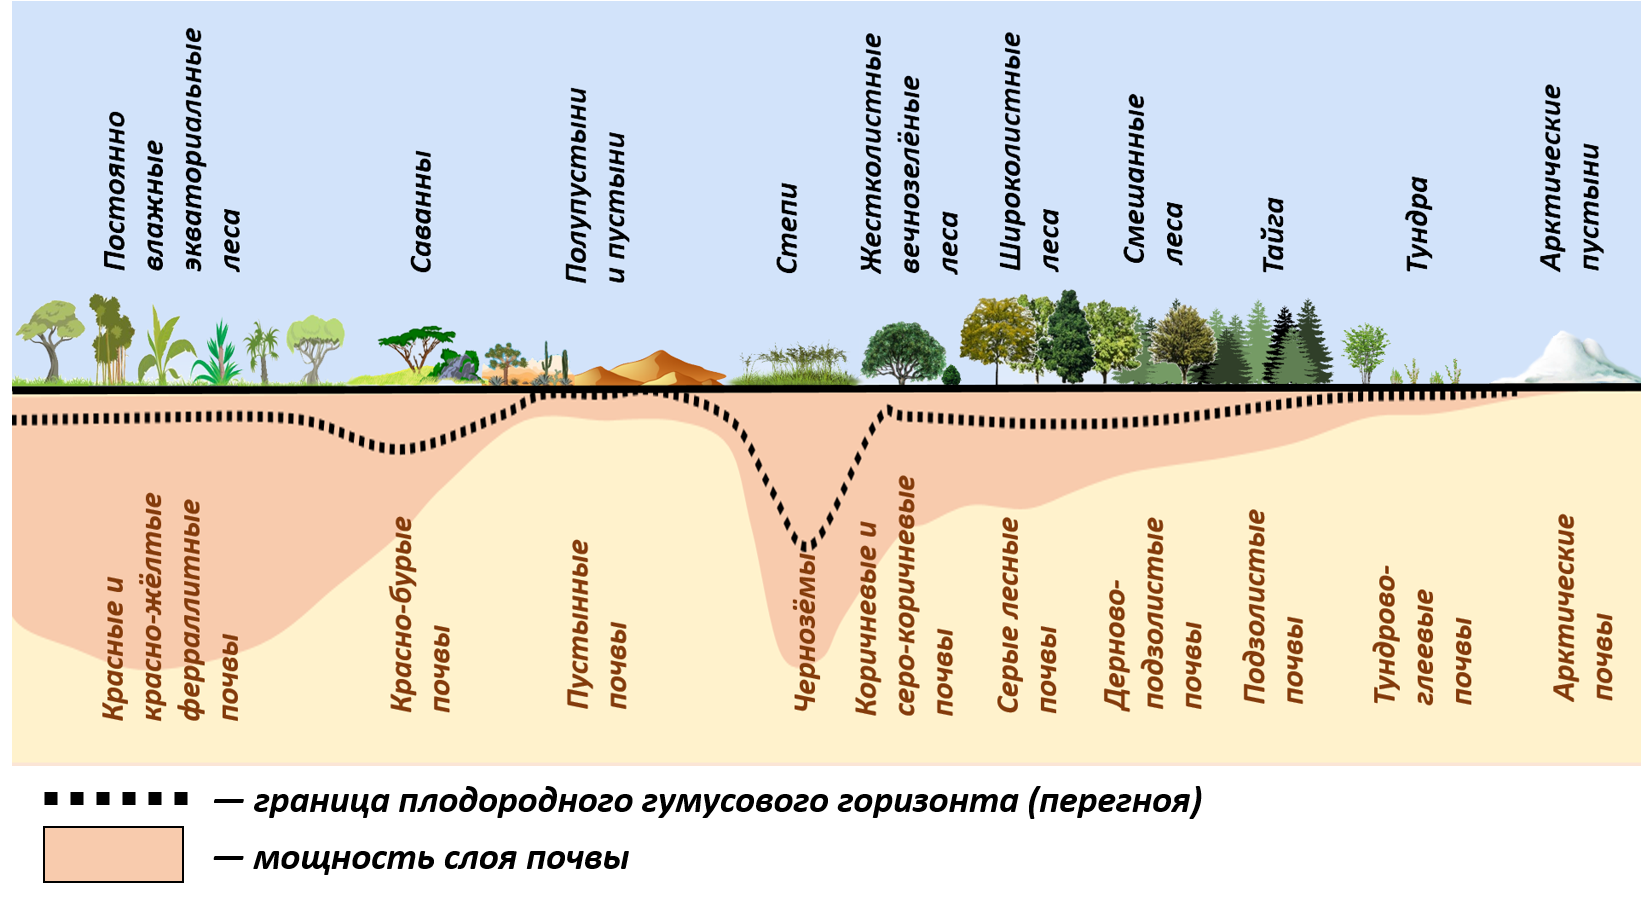 Почему живые организмы размещаются неравномерно на земле. Почвы природных зон. Распределение почв по природным зонам. Зональное распределение почв. Основные зональные типы почв России.